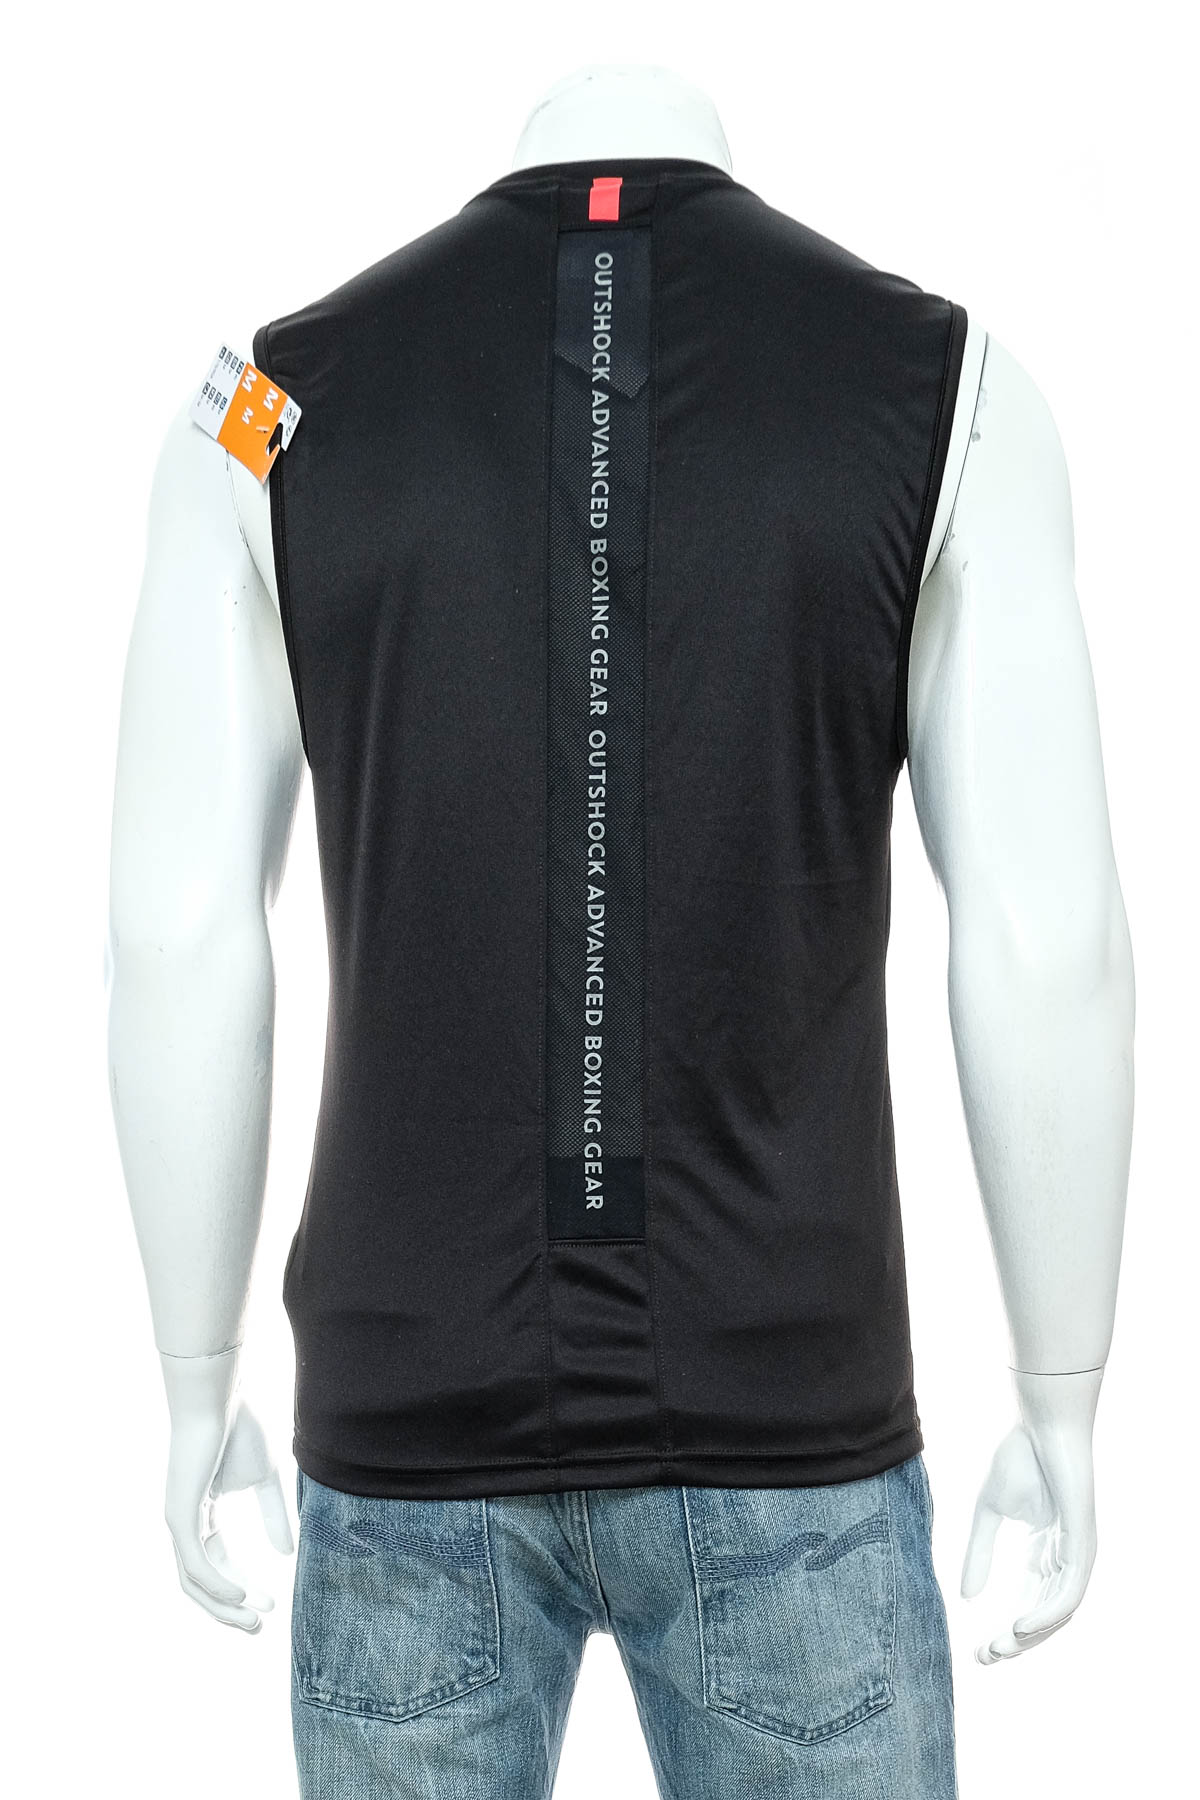 Αντρικό μπλουζάκι - Decathlon - 1